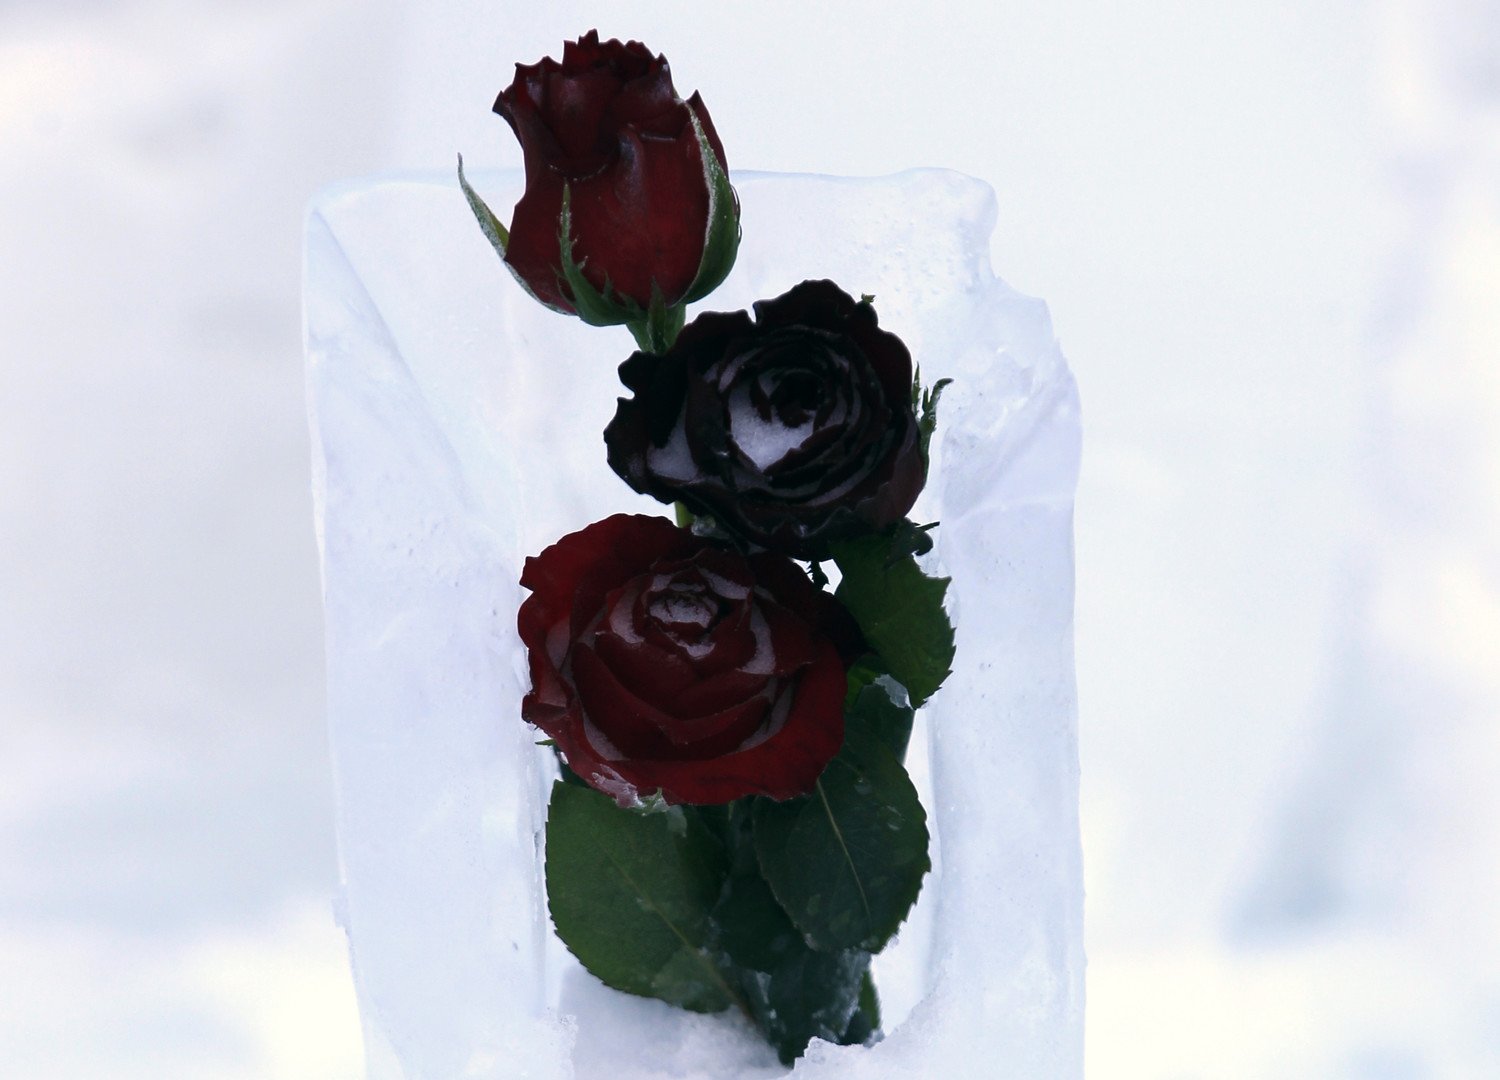 زهور على طاولة من الجليد موضوعة خارج فندق باليا لاك، 28 يناير/كانون الثاني 2015